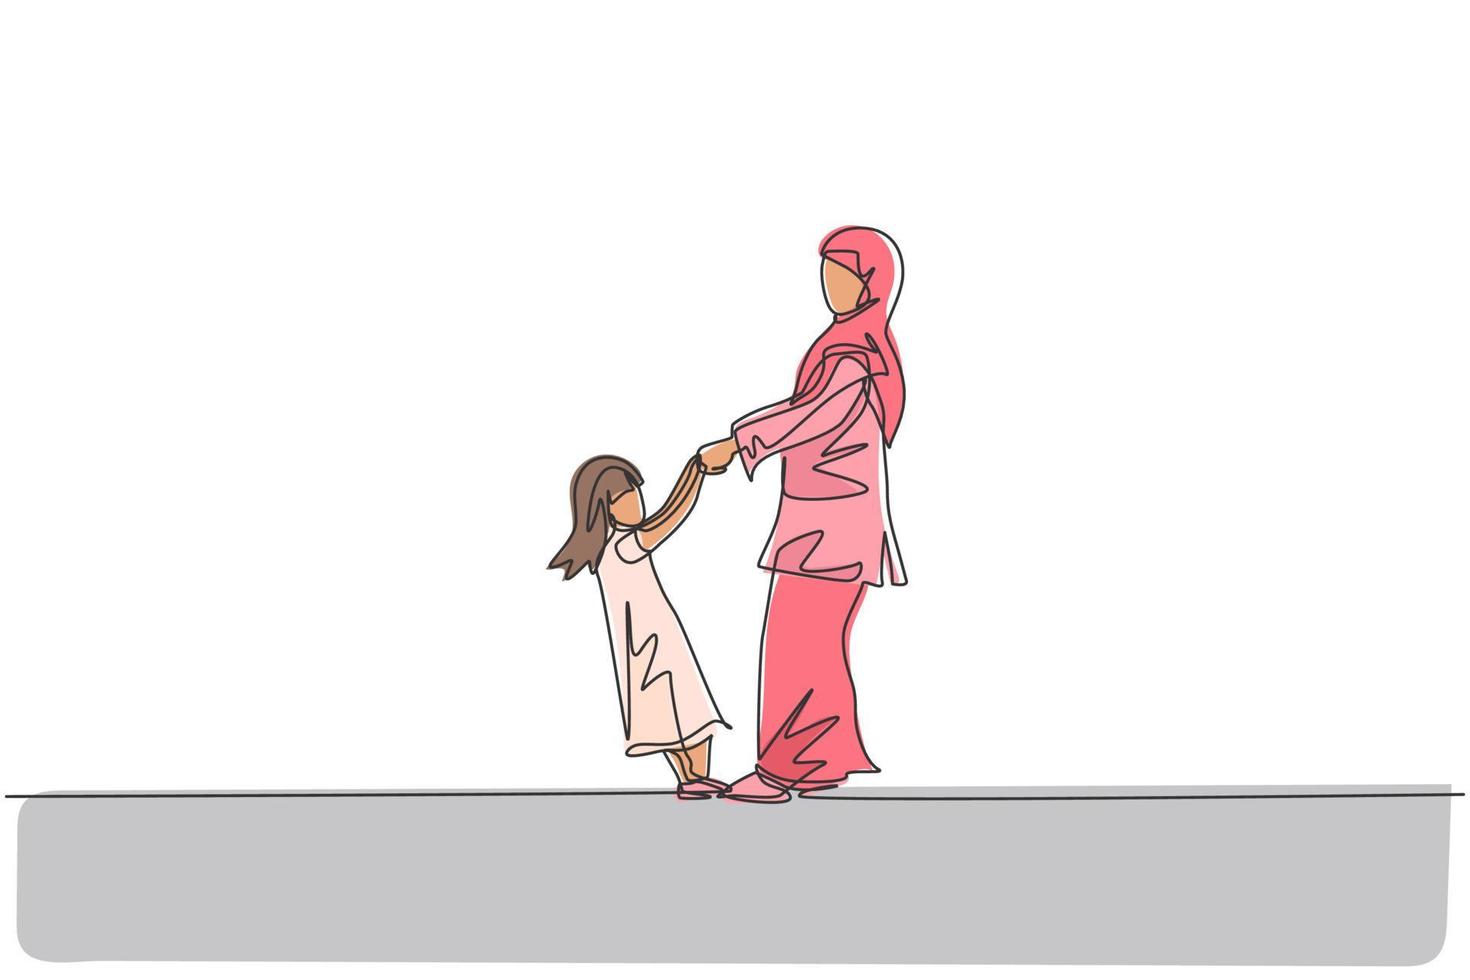 singolo disegno a tratteggio di giovane mamma e figlia arabe che si tengono per mano, giocando insieme illustrazione vettoriale. felice concetto di genitorialità familiare musulmana islamica. disegno grafico moderno a linea continua vettore